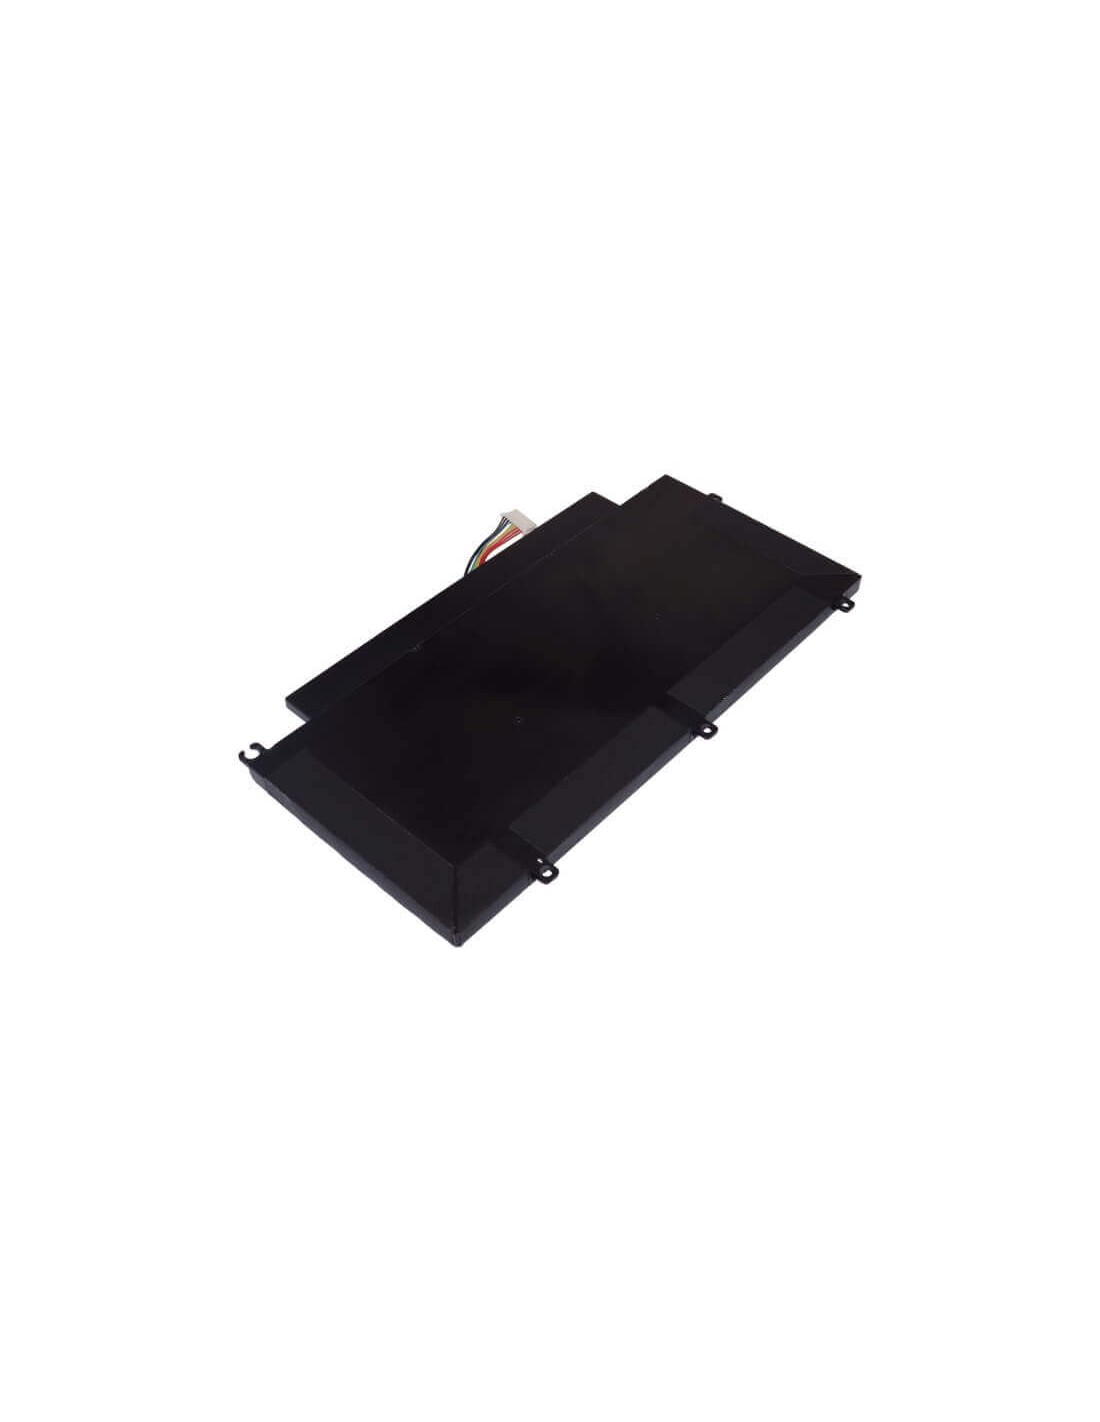 Black Battery for Lenovo Thinkpad T431s 11.1V, 4250mAh - 47.18Wh